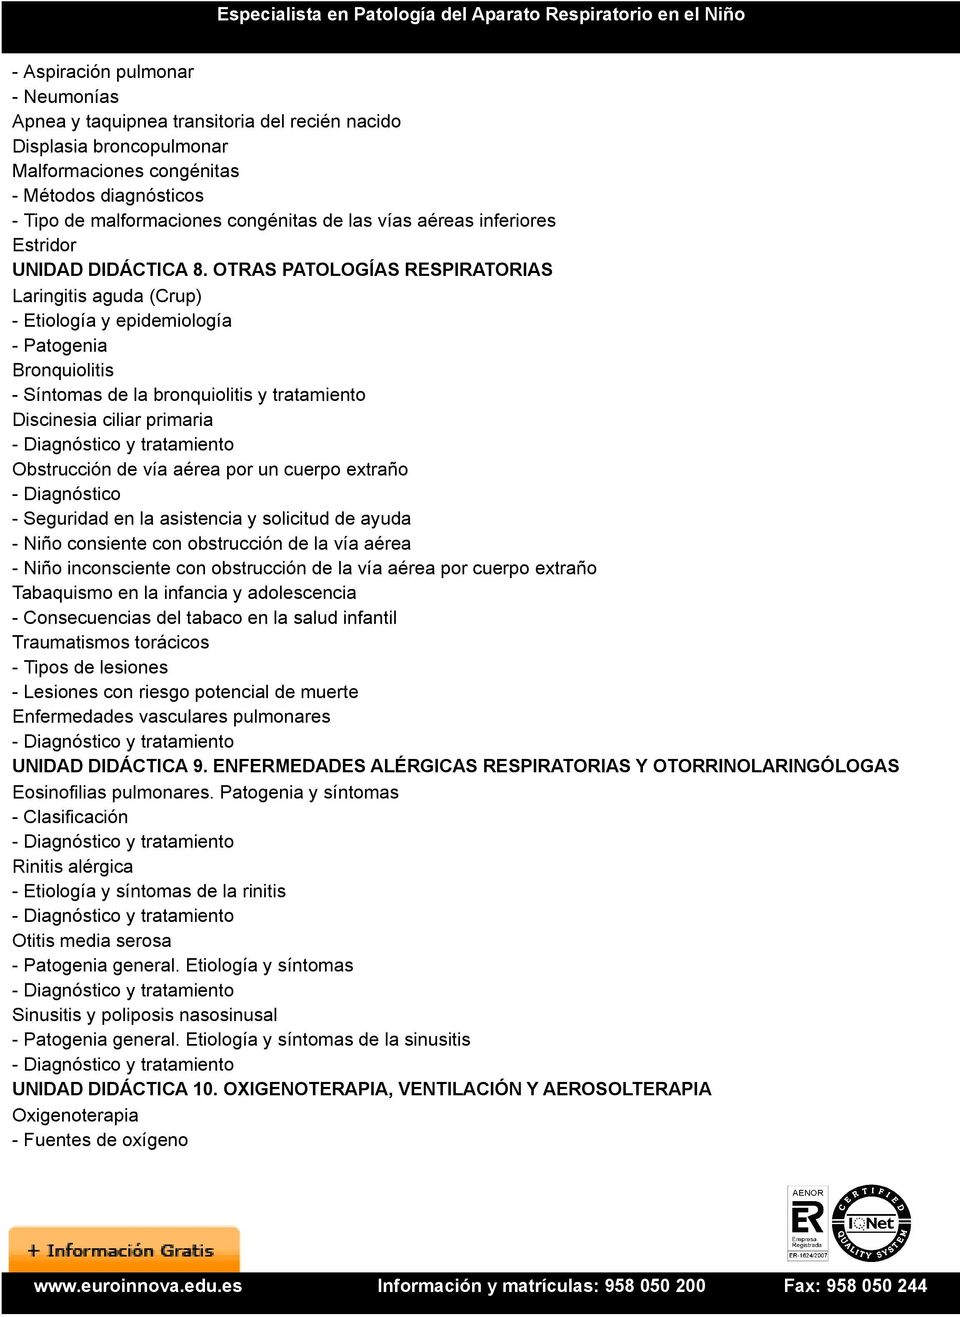 OTRAS PATOLOGÍAS RESPIRATORIAS Laringitis aguda (Crup) - Etiología y epidemiología - Patogenia Bronquiolitis - Síntomas de la bronquiolitis y tratamiento Discinesia ciliar primaria Obstrucción de vía